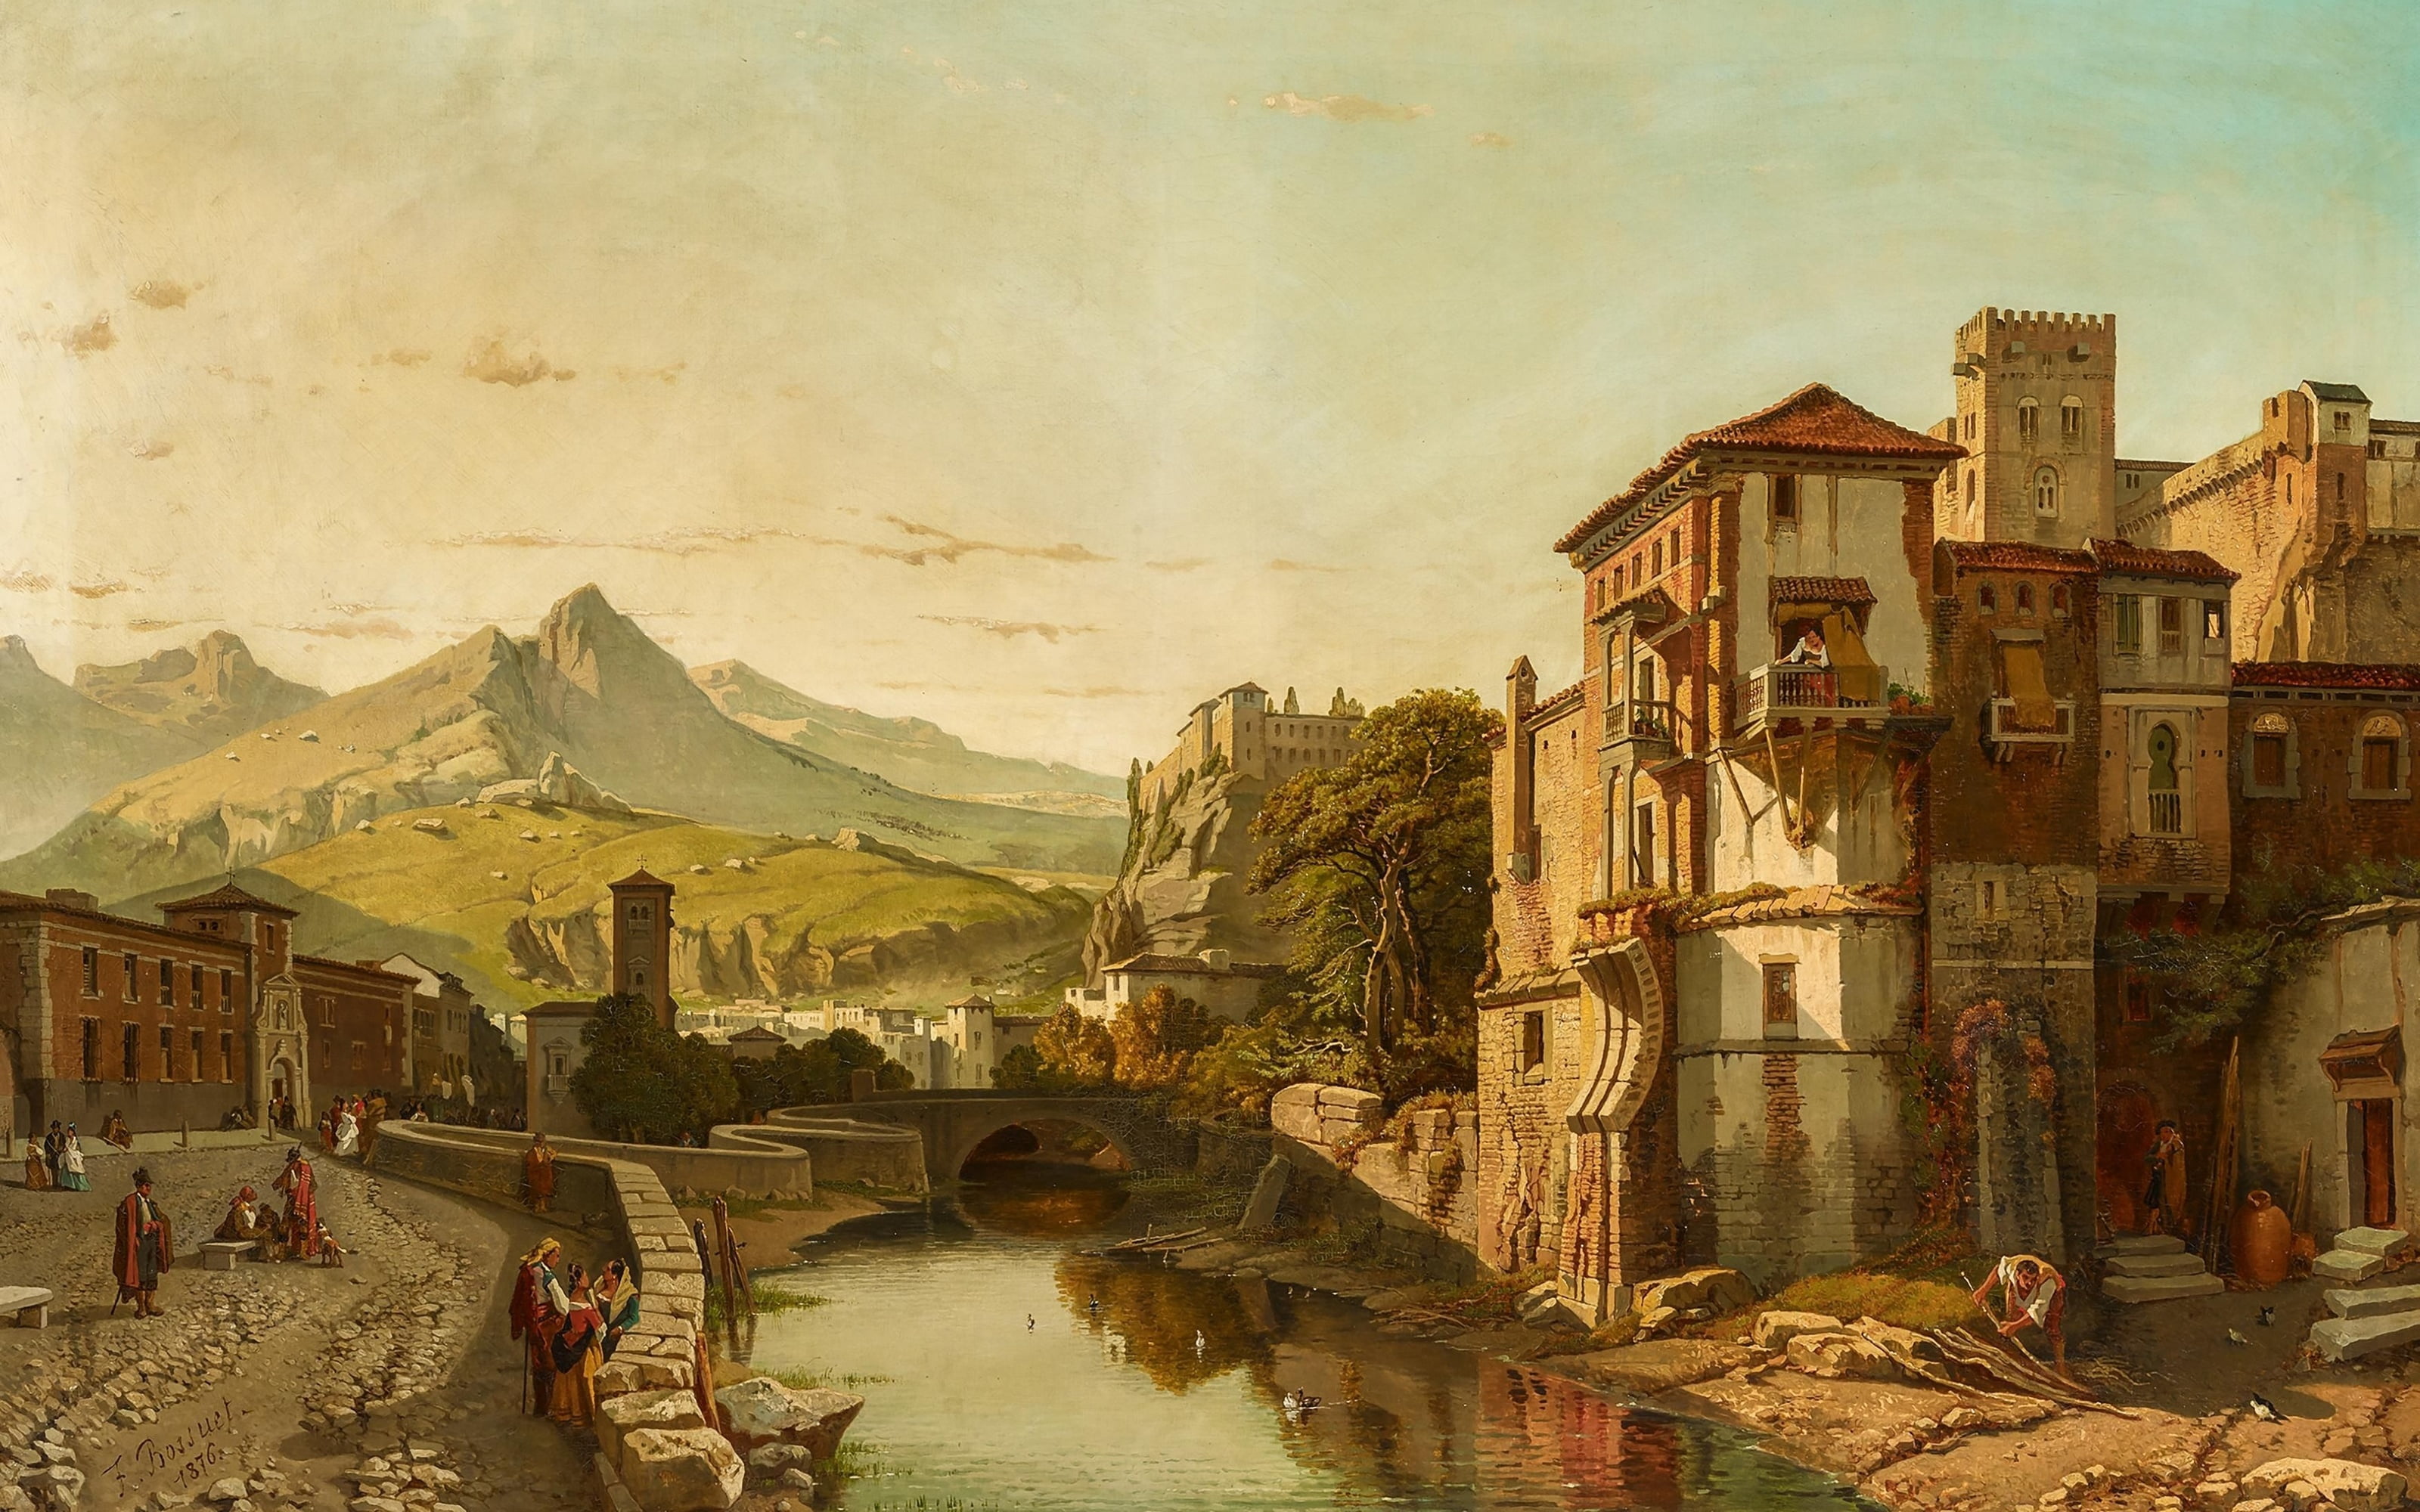 Granada, 1876, Belgian painter, oil on canvas, François-Antoine Bossuet